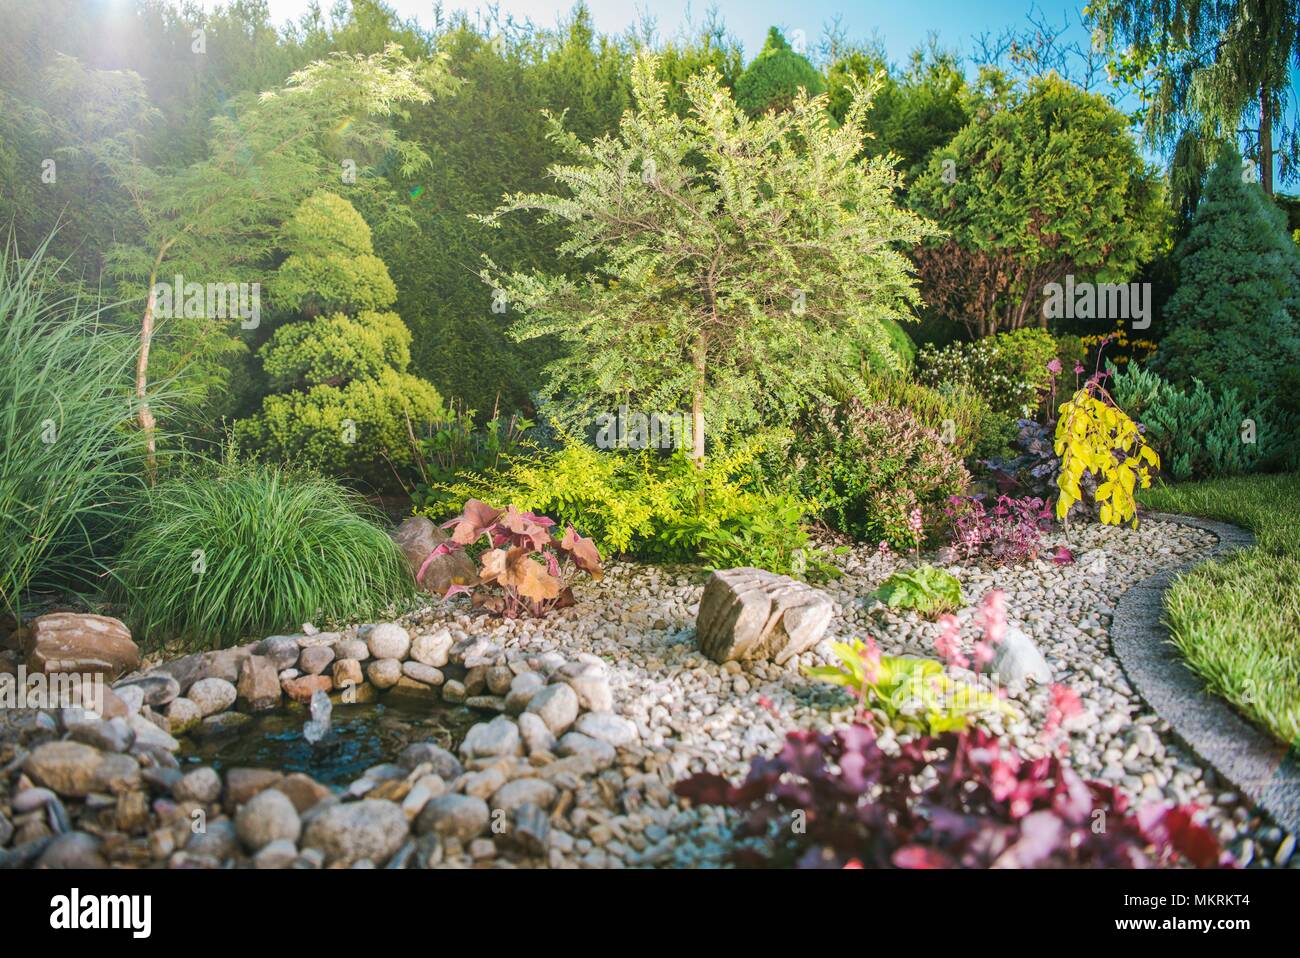 Kreative Garten voll von bunten Pflanzen. Gartenarbeit Thema. Stockfoto